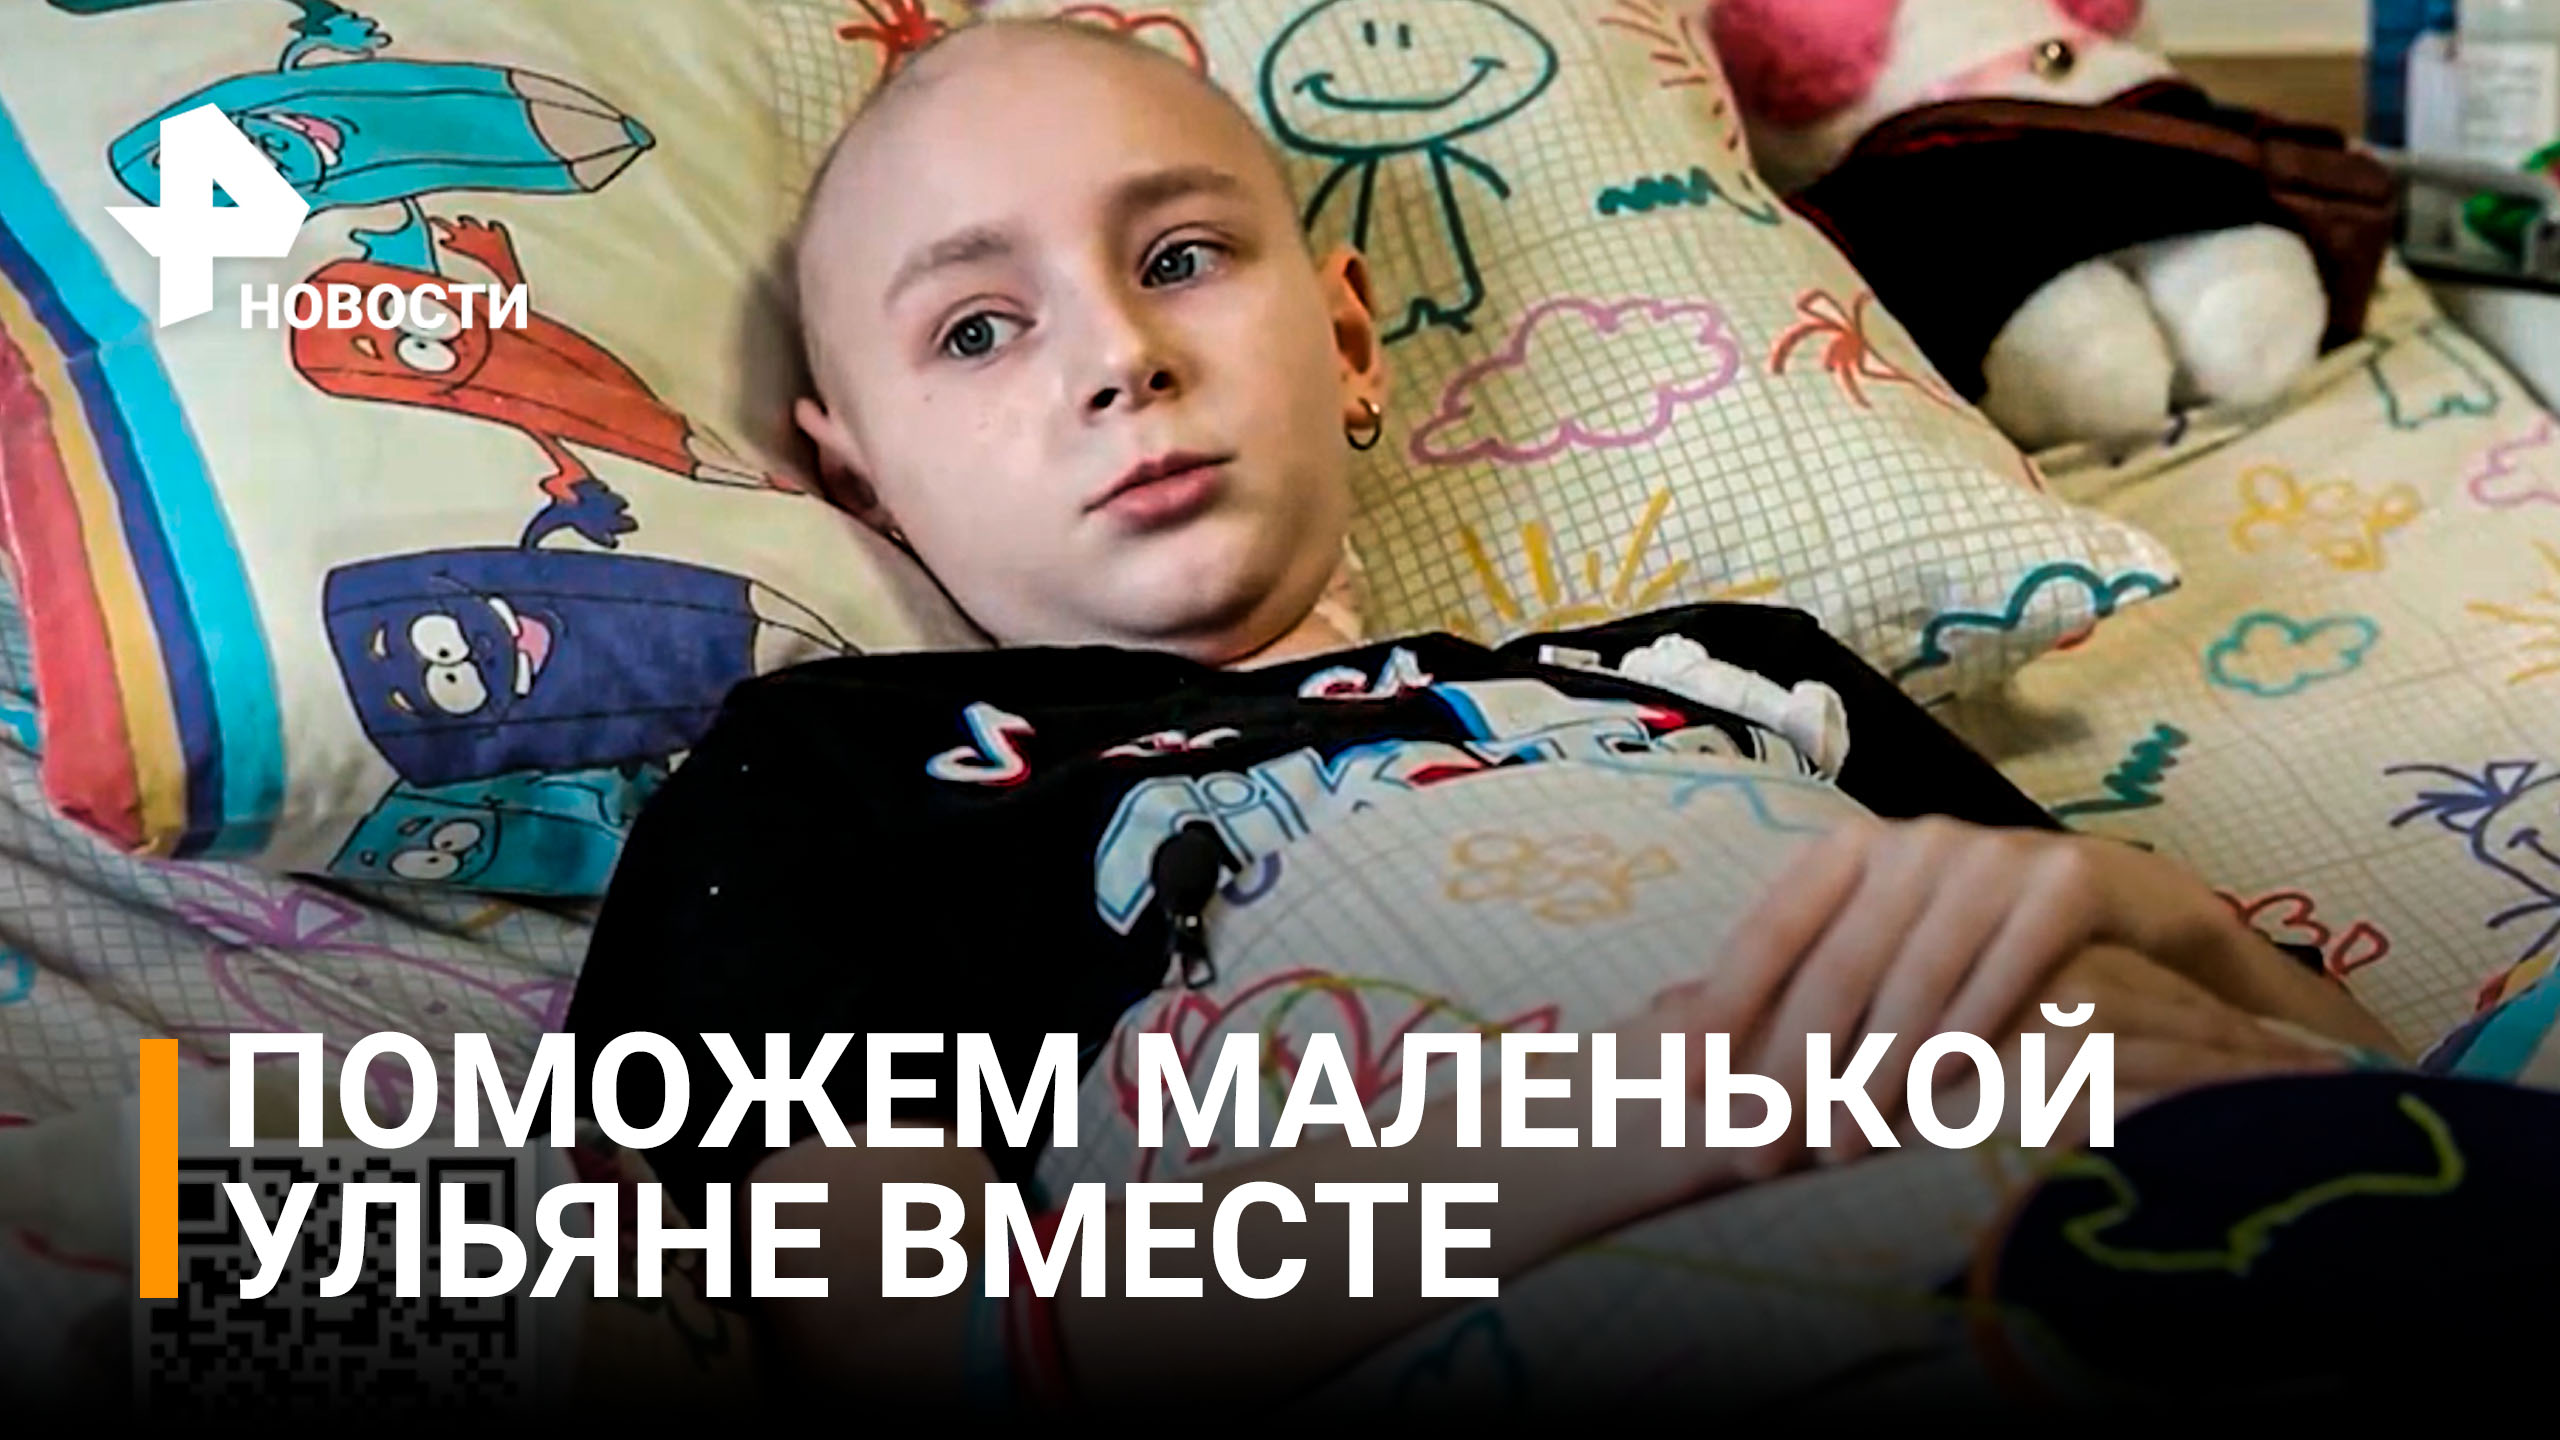 РЕН ТВ собирает средства на спасения маленькой Ульяны / РЕН Новости